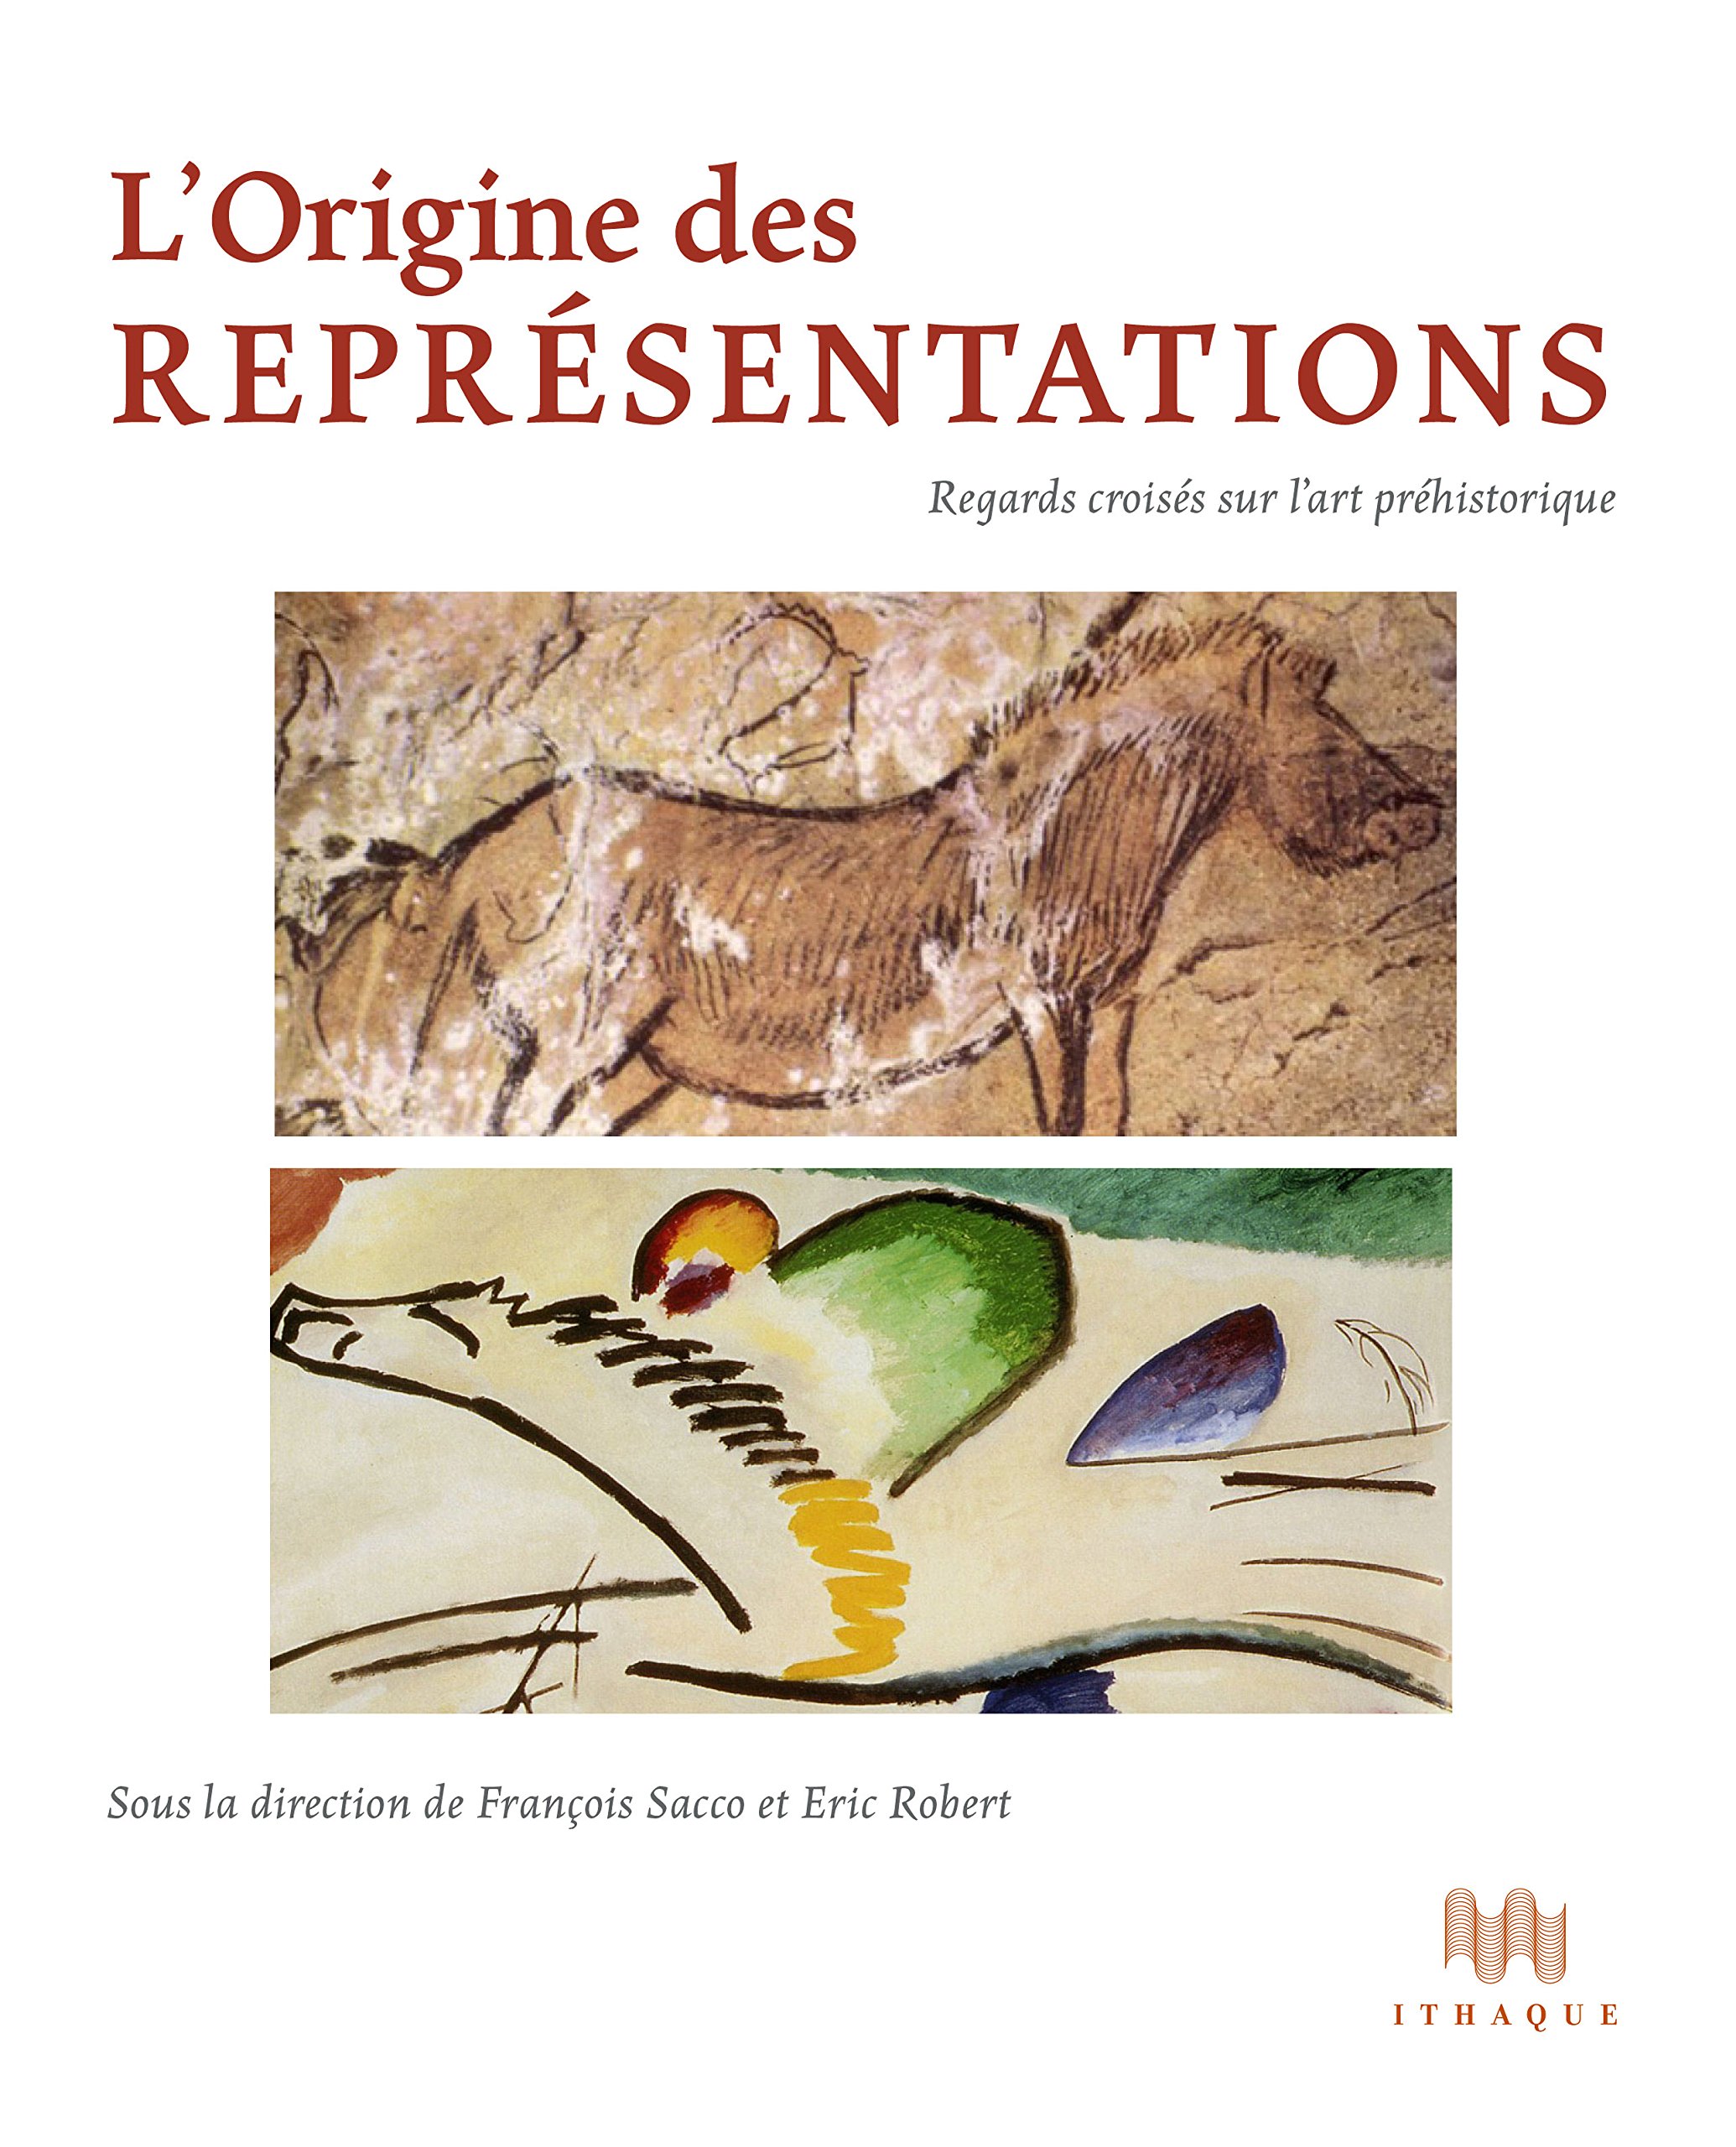 L'Origine des représentations. Regards croisés sur l'art préhistorique, 2016, 272 p.